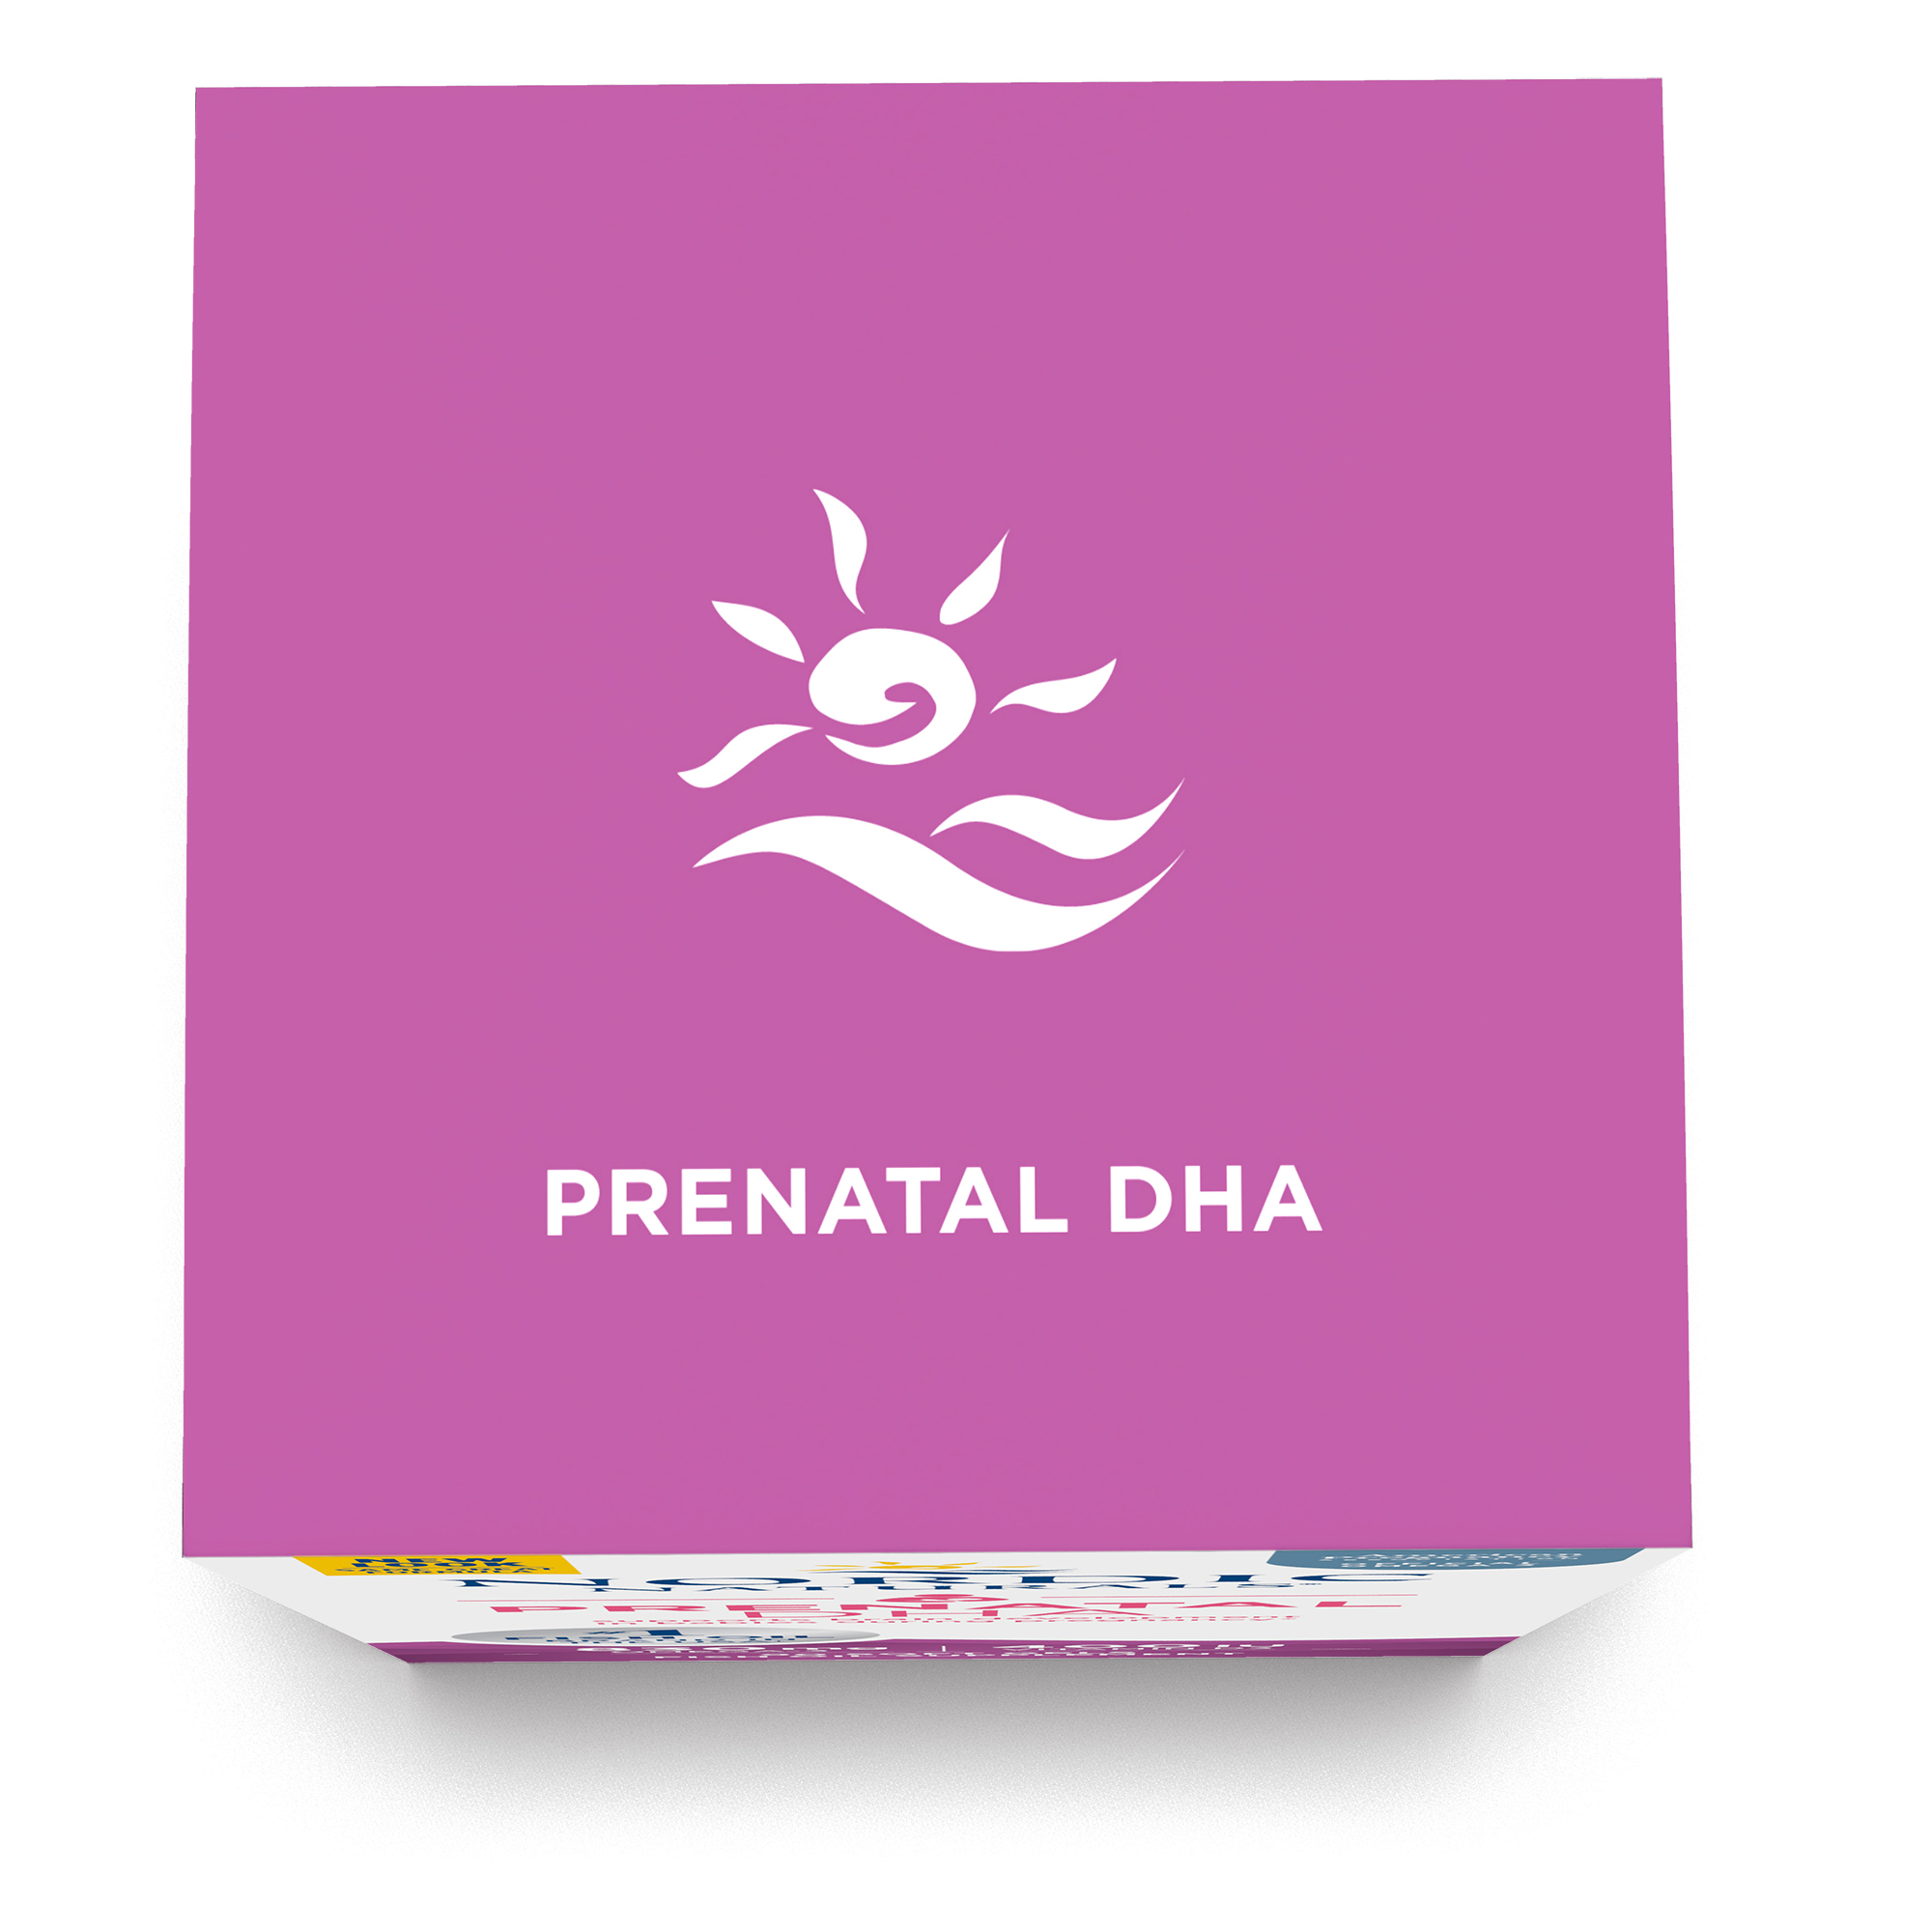 Nordic Naturals Prenatal DHA 90 viên nang mềm, Axit béo Omega + Vitamin D 400 IU, Hỗ trợ thai kì và thai nhi phát triển - Hàng Chính Hãng